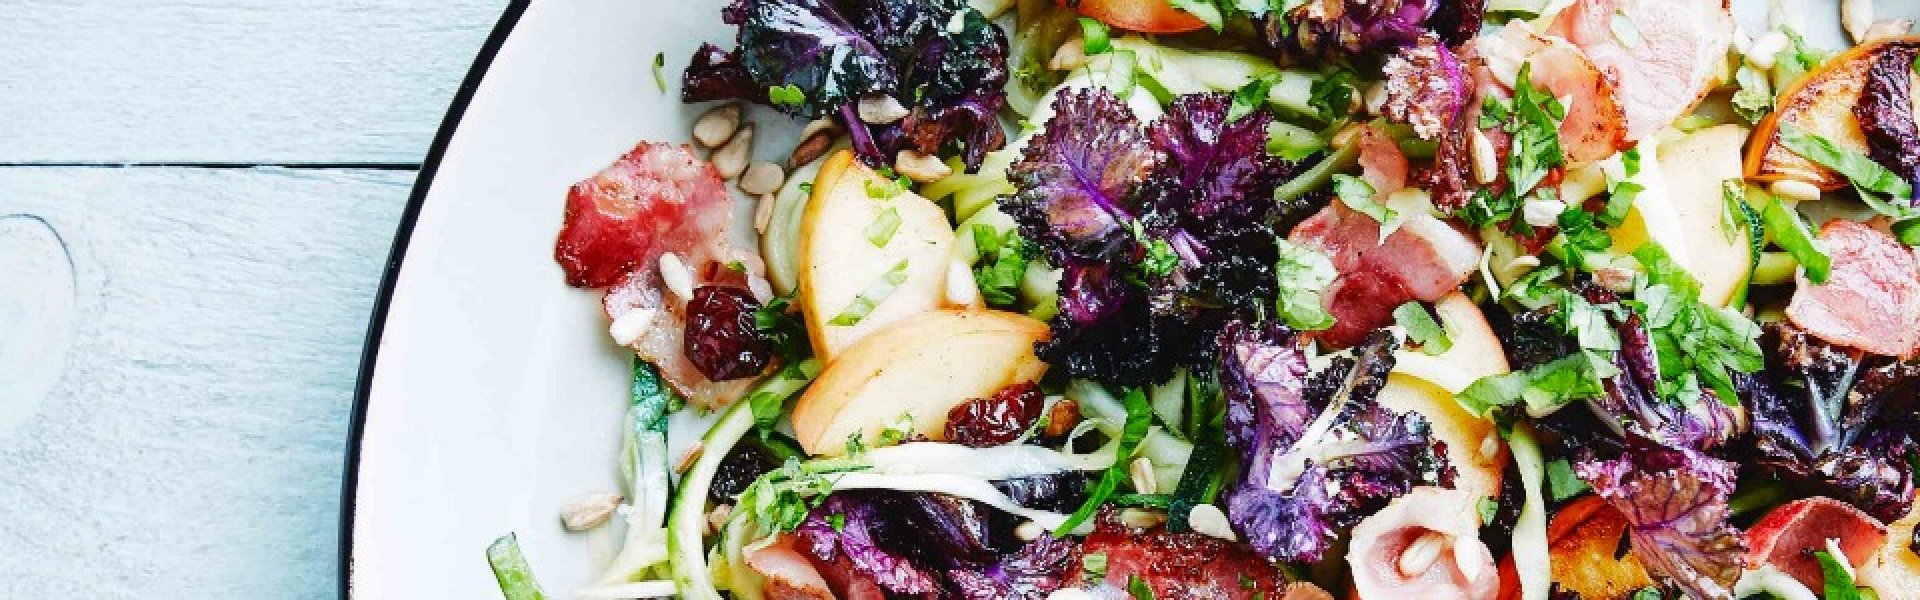 6 simpele tips om meer groenten te eten 